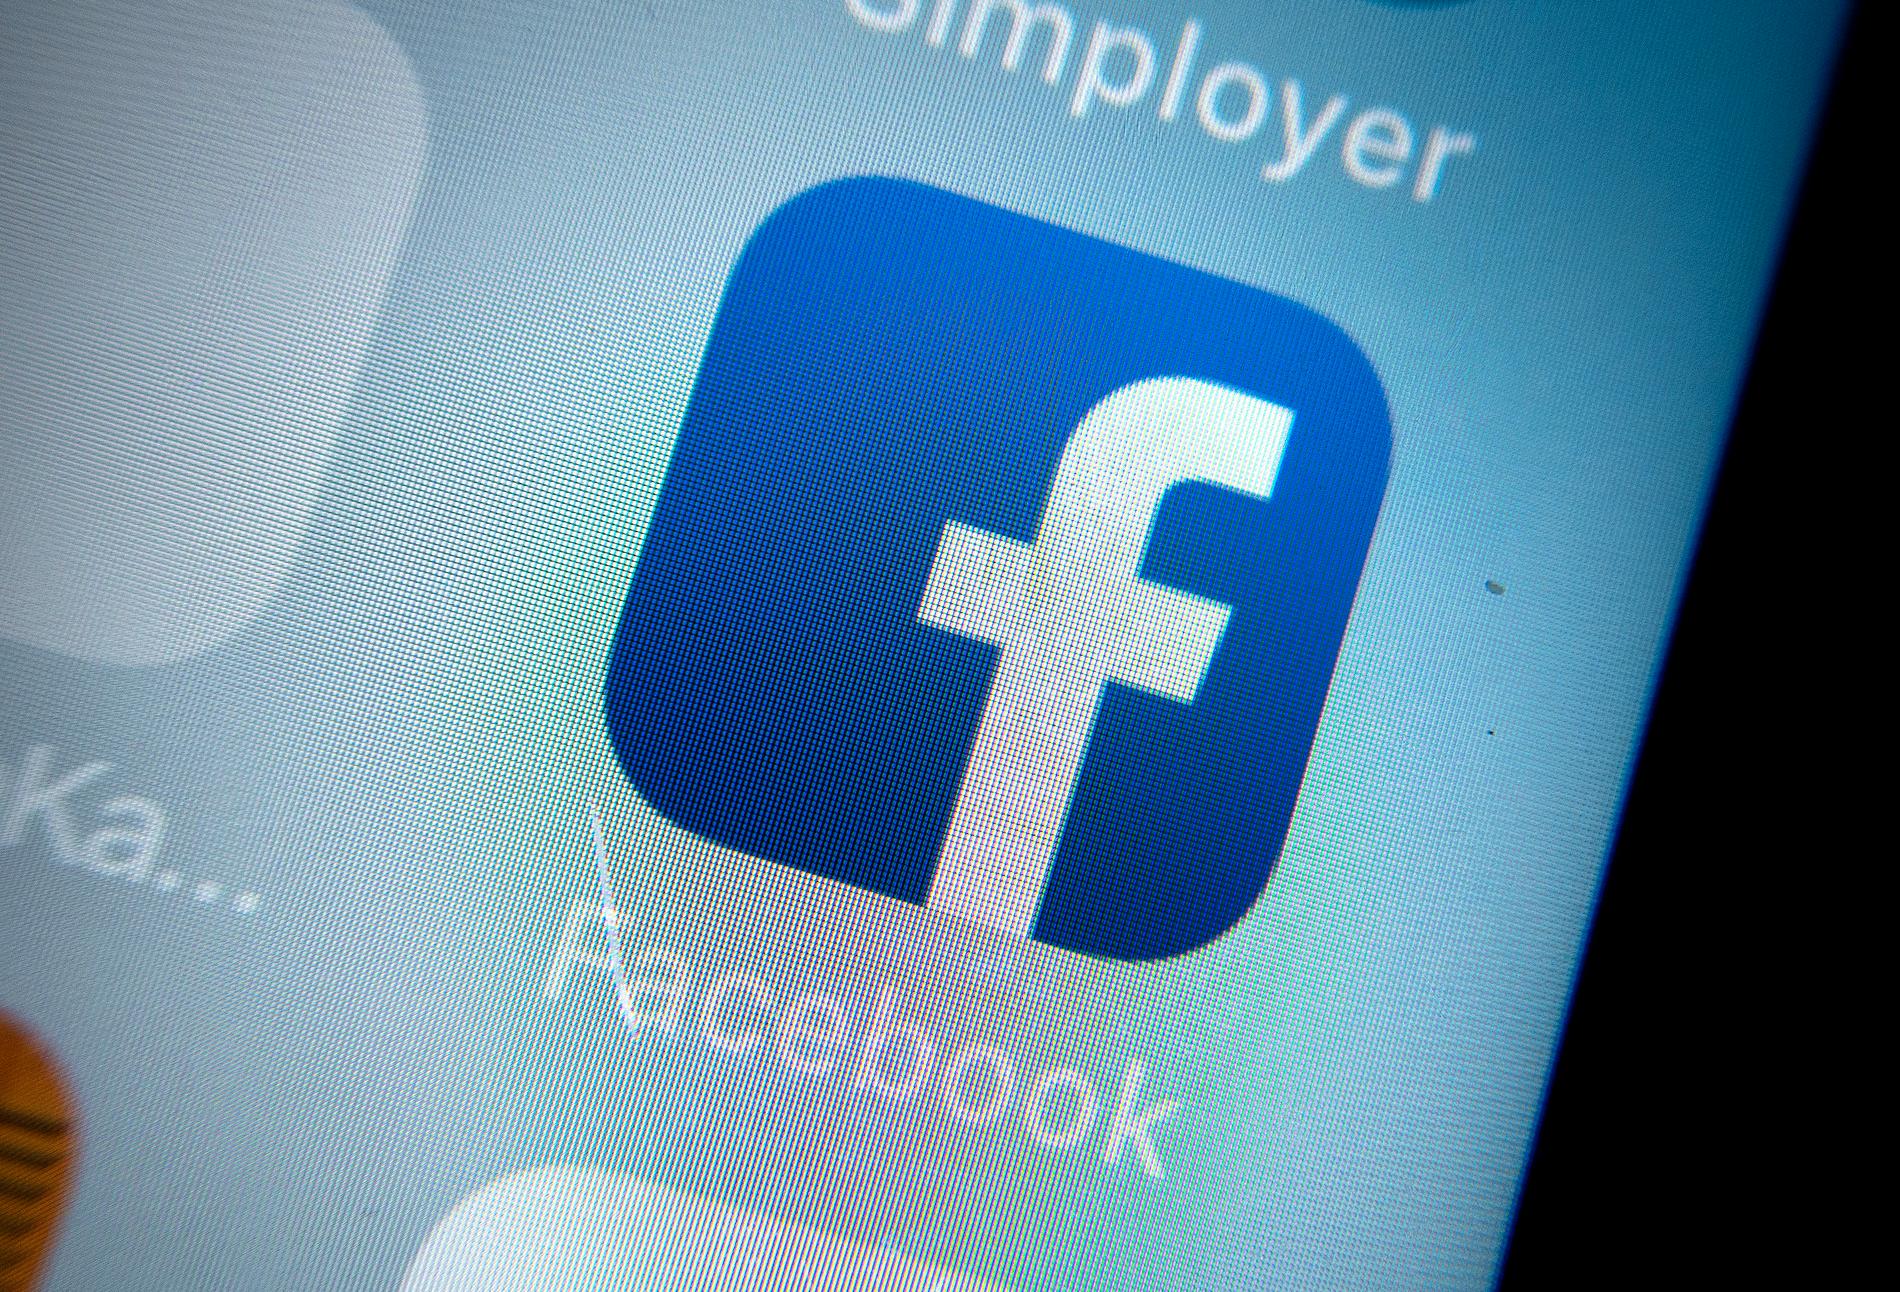 Knappt 200 såg livesändningen av terrordådet på Facebook, uppger bolaget.